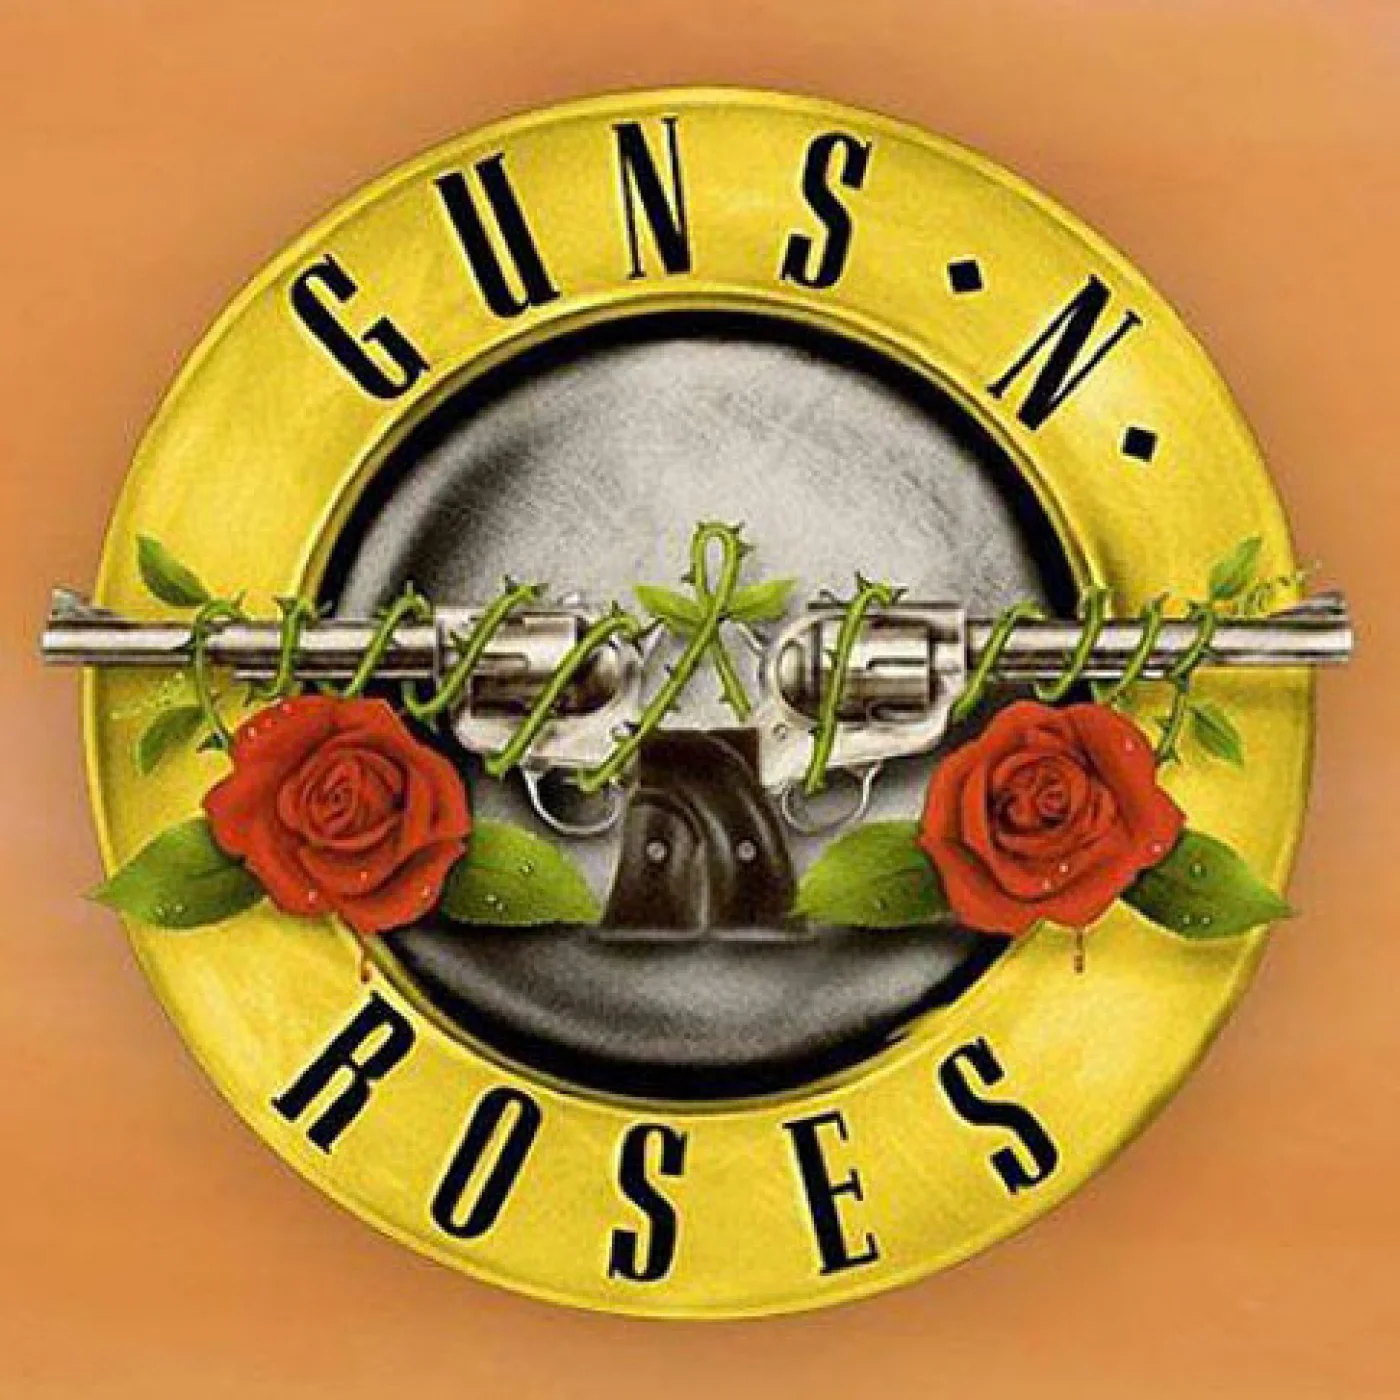 Guns N Roses: Shows no Brasil em novembro?